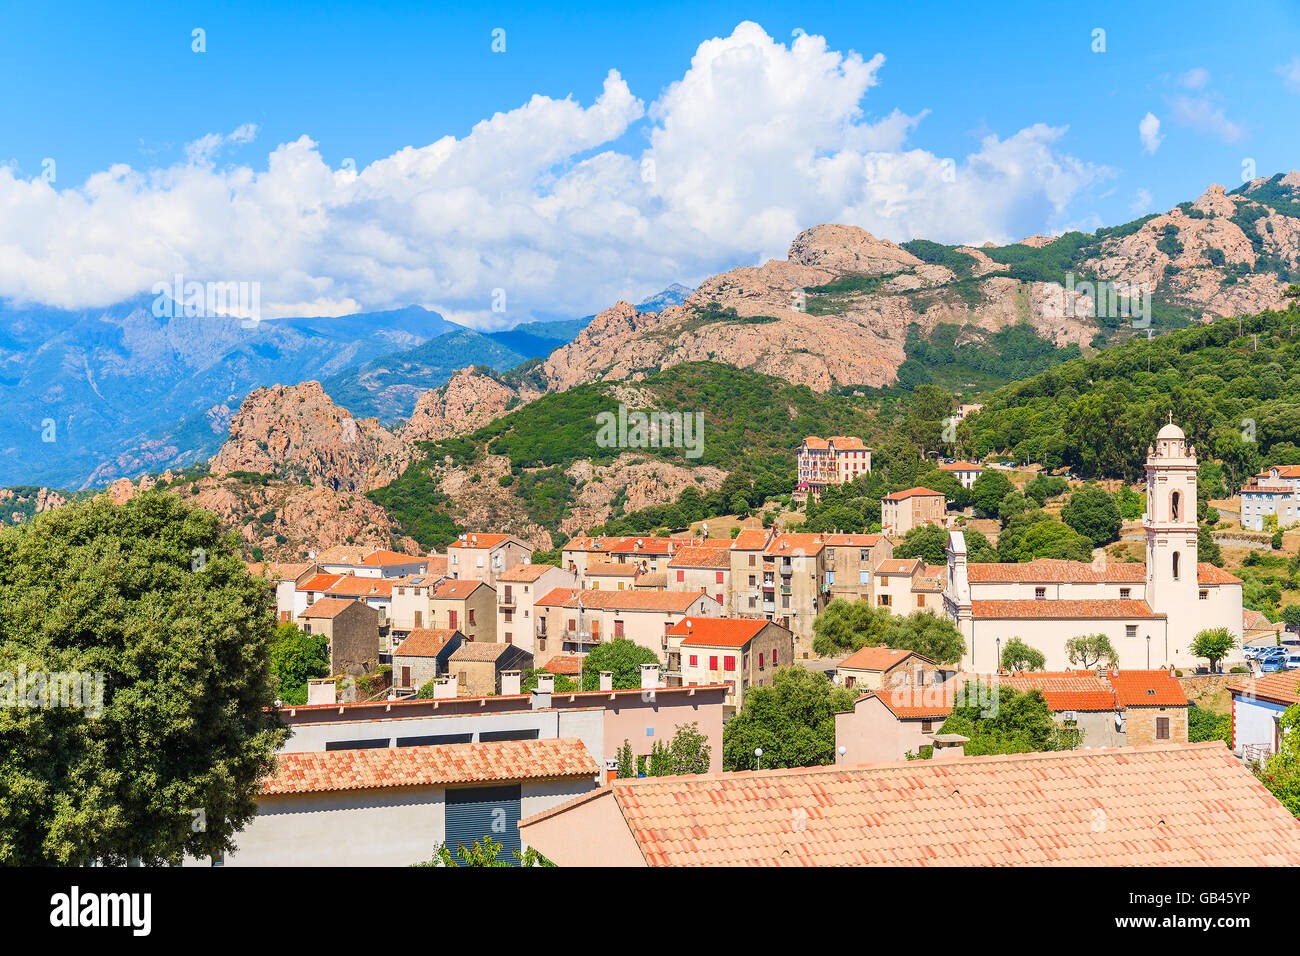 Vue sur le village de Piana avec tour de l'église dans paysage de montagnes de l'ouest de la Corse, France Banque D'Images